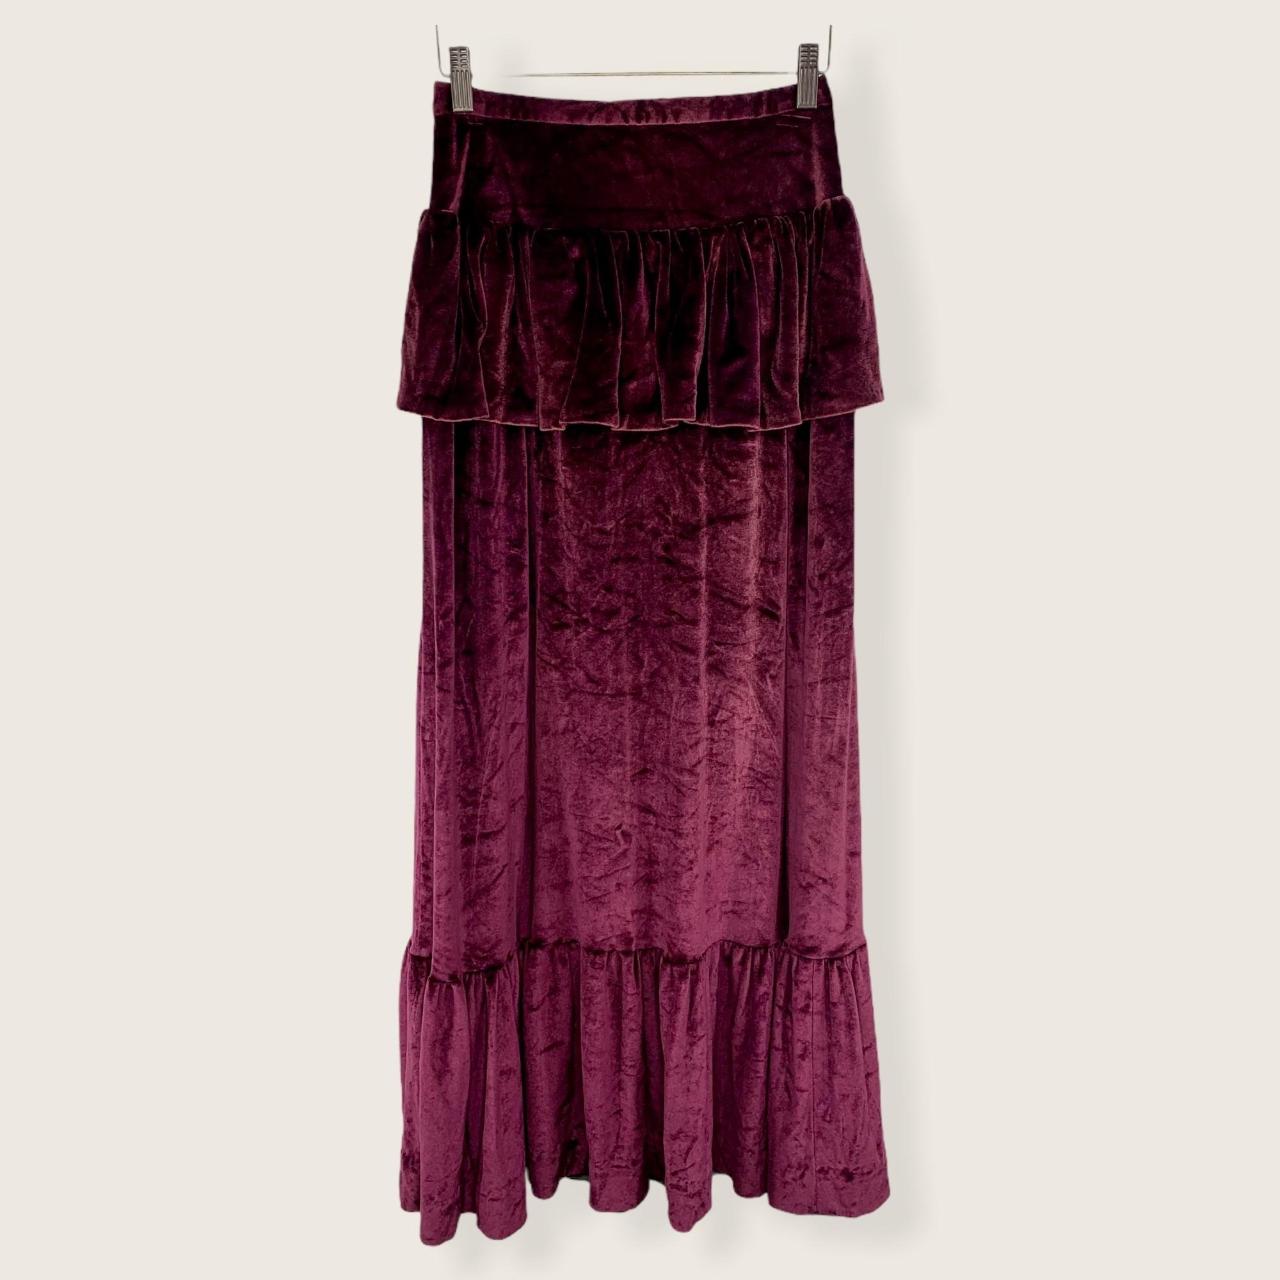 Product Image 1 - Handmade Crush Velvet Maxi Skirt
Back